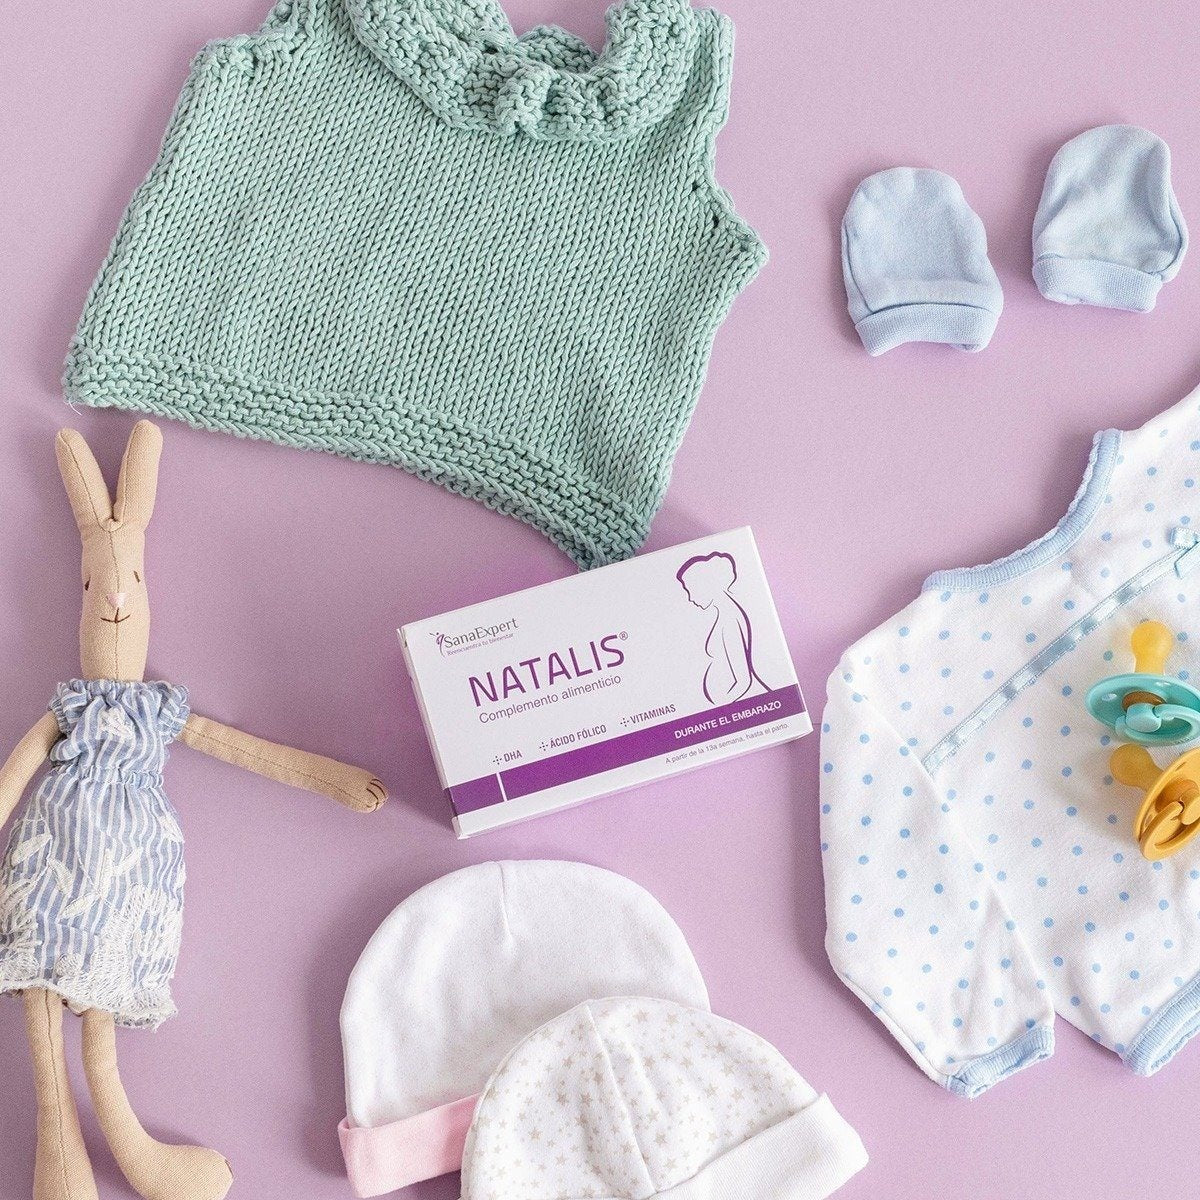 Flachgelegte Anordnung von Babykleidung und Natalis Nahrungsergänzungsmitteln auf einem rosa Hintergrund, bereit für die Ankunft eines Neugeborenen.